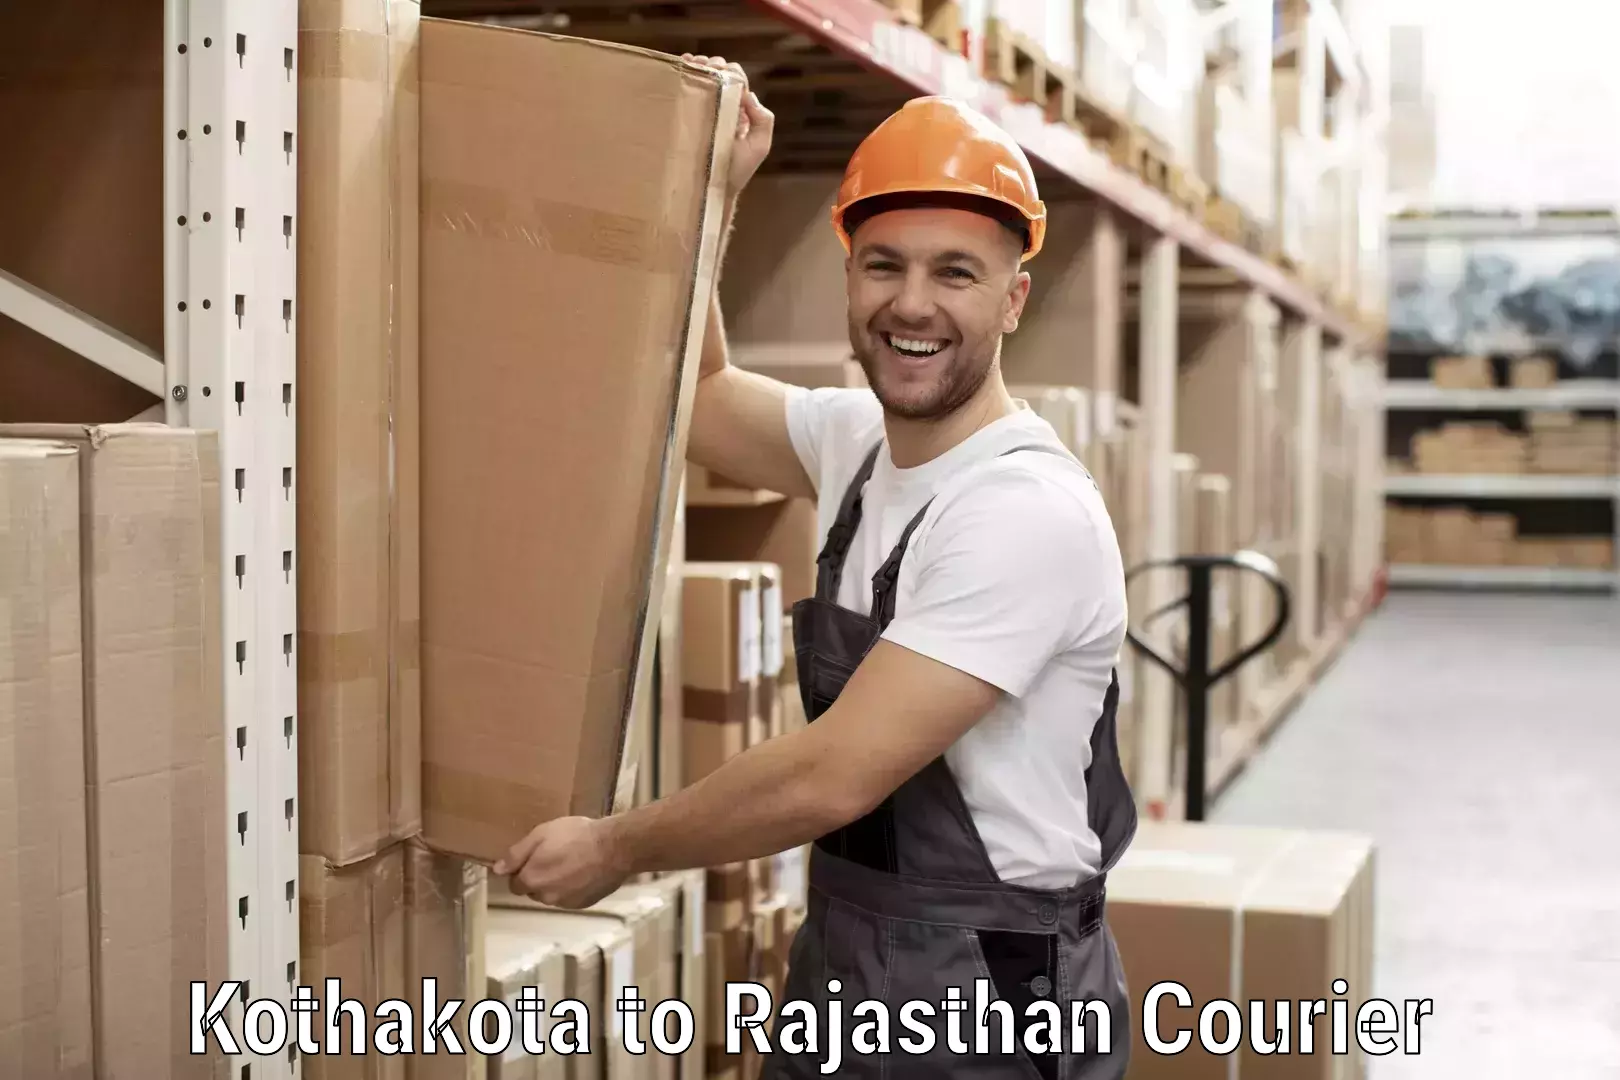 High-capacity parcel service Kothakota to Rajsamand